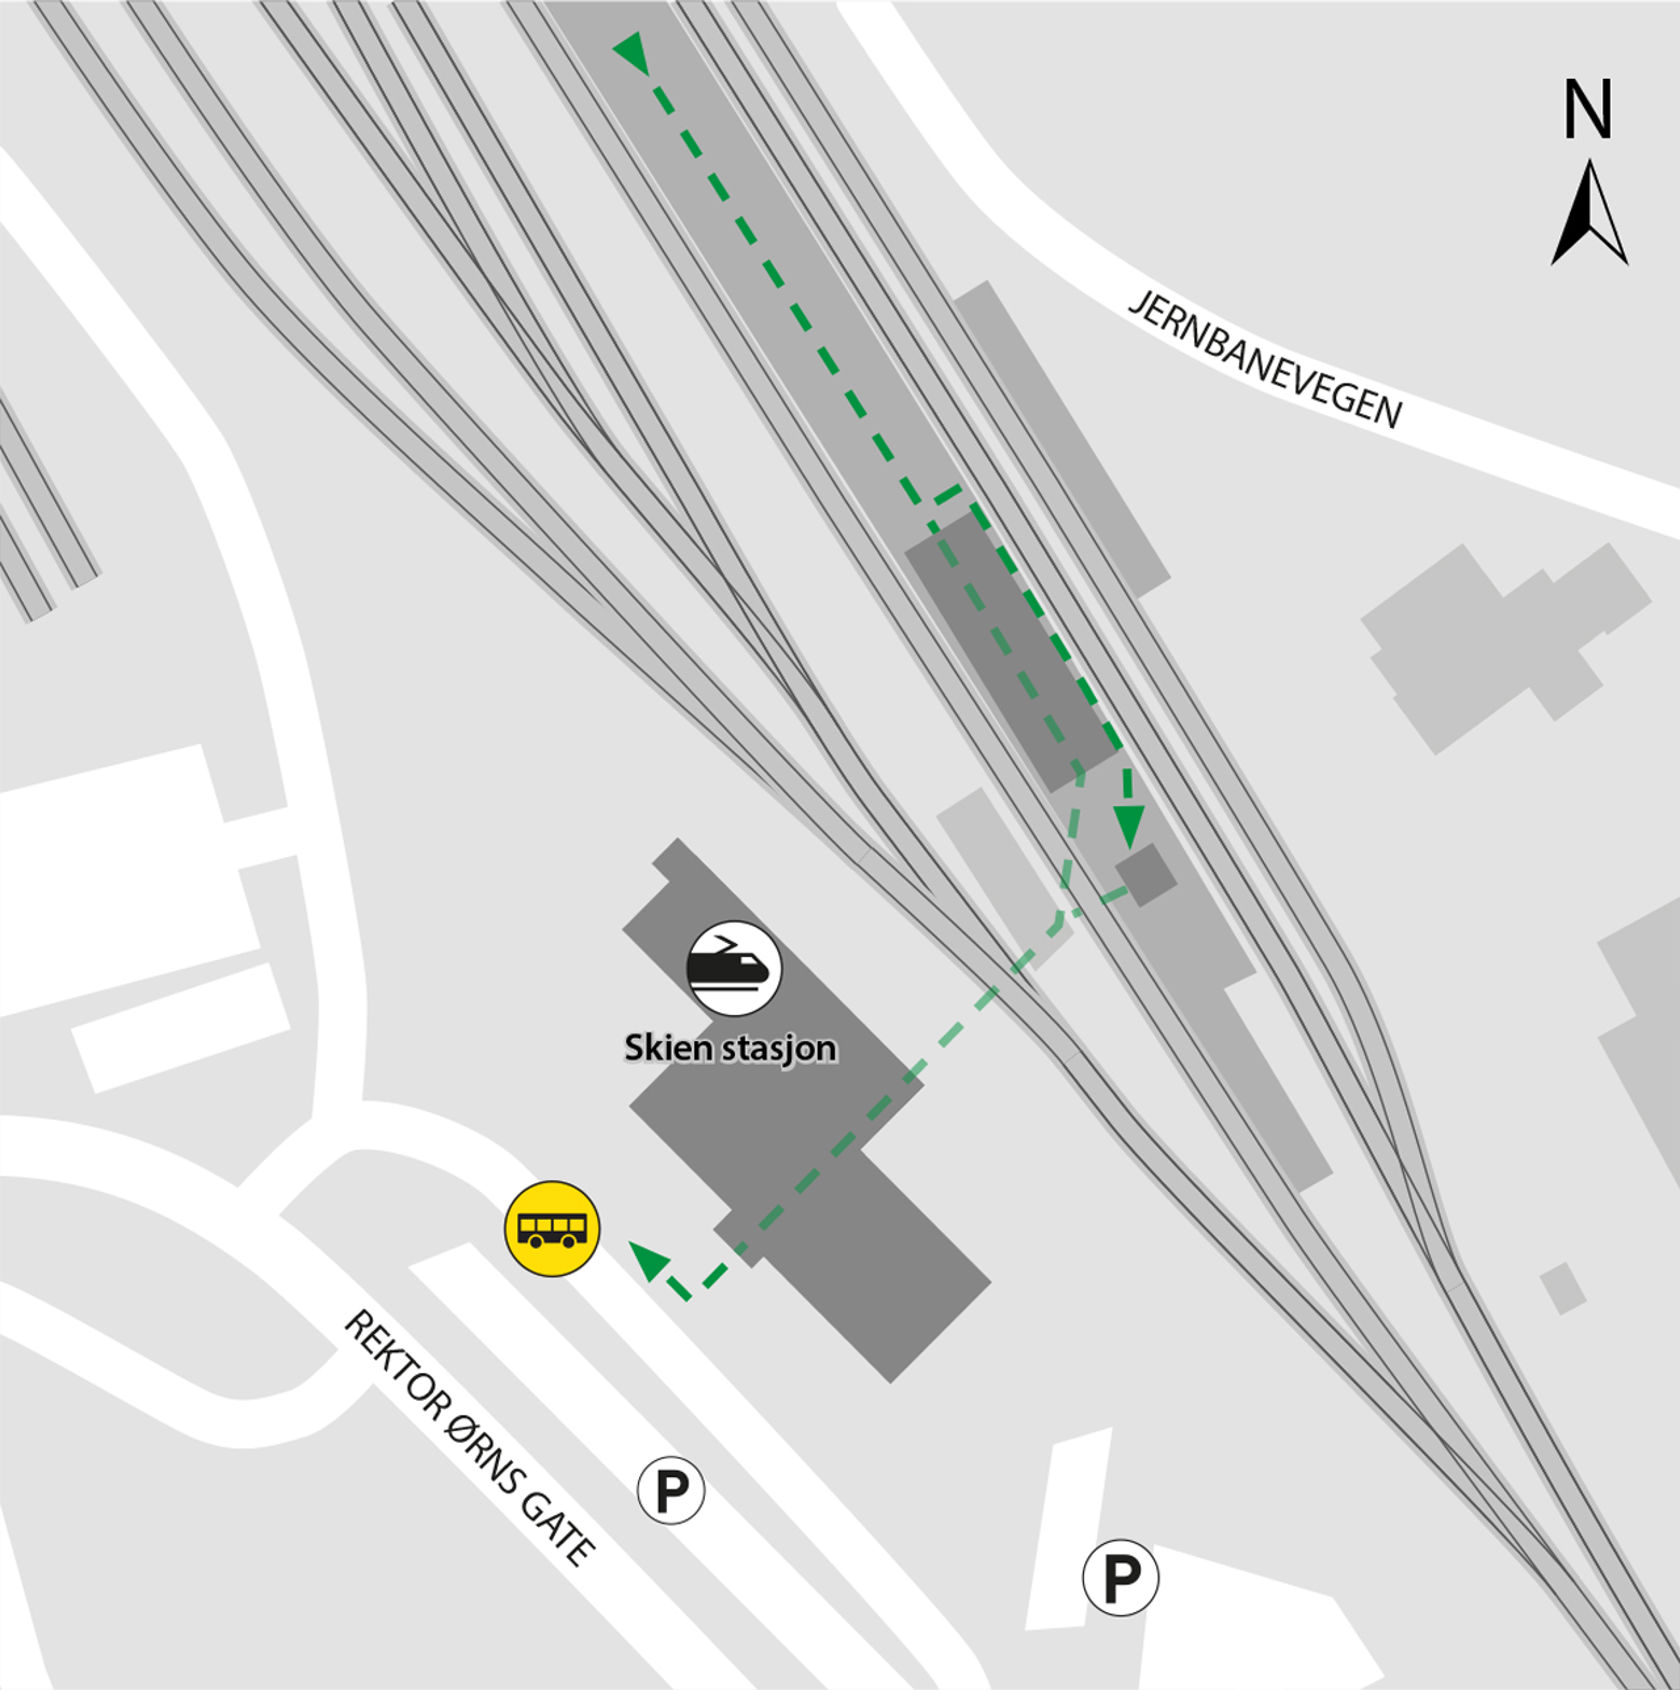 Kartet viser at bussene kjører fra bussholdeplassen Skien stasjon. 